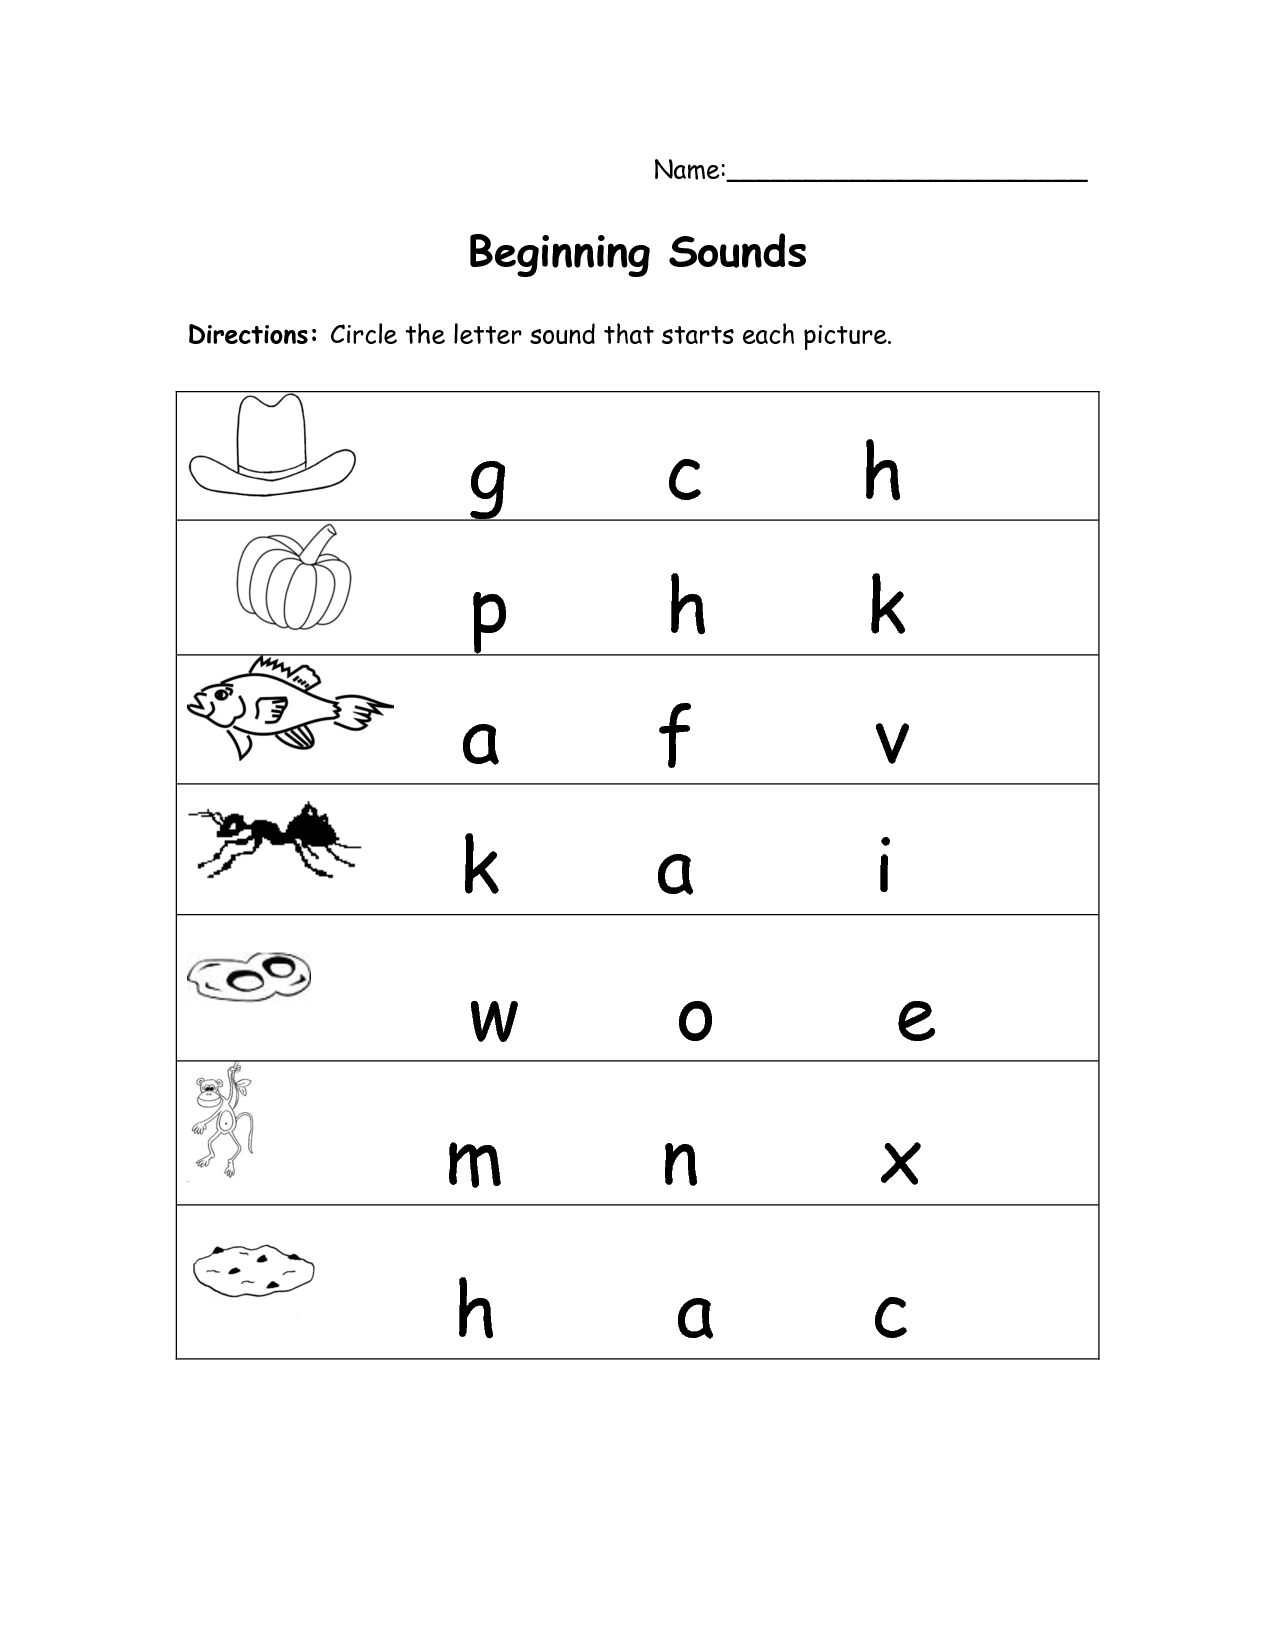 Initial Sounds Worksheets | Dmmb Worksheets | Beginning intended for Alphabet Sounds Worksheets For Kindergarten